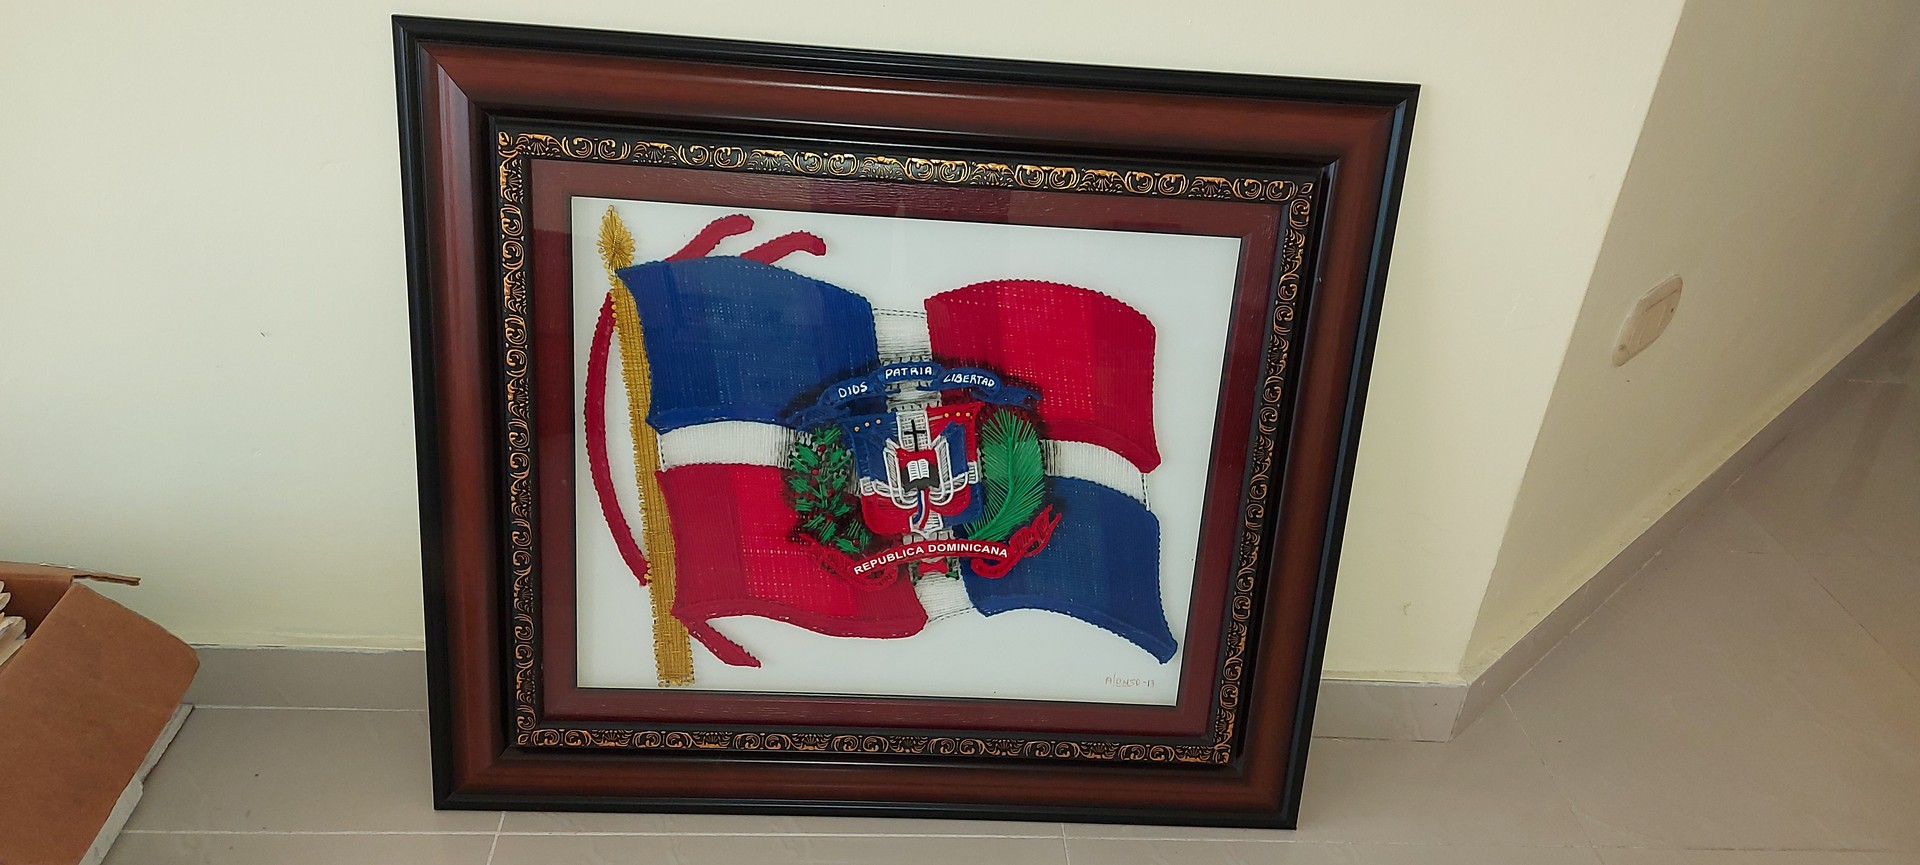 arte y antigüedades - Cuadro en hilo bandera y escudo republica dominicana